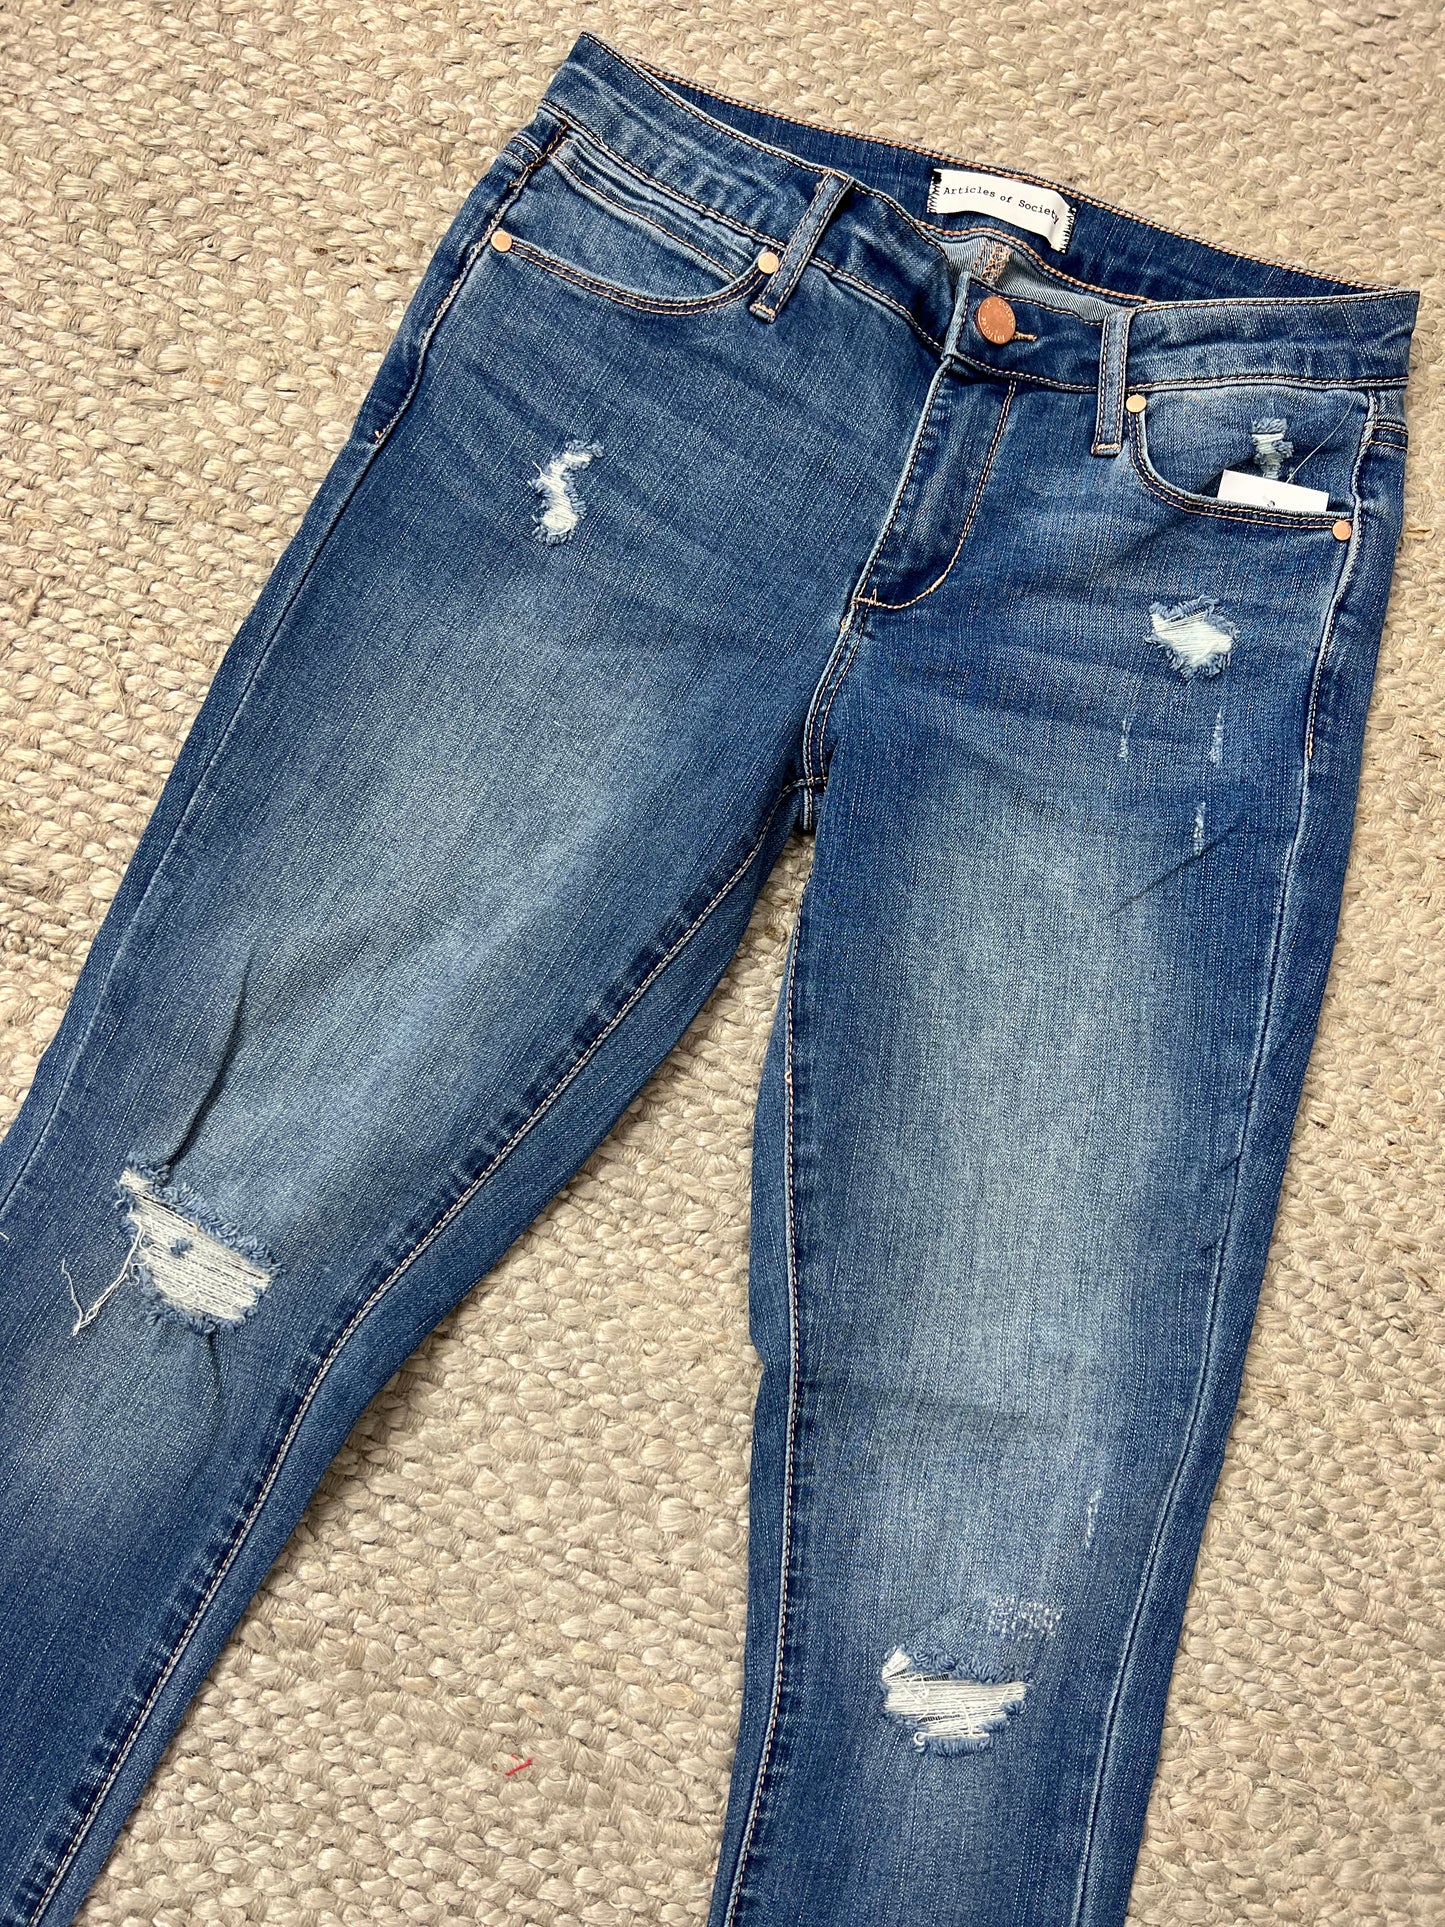 Suzy Newport Jeans